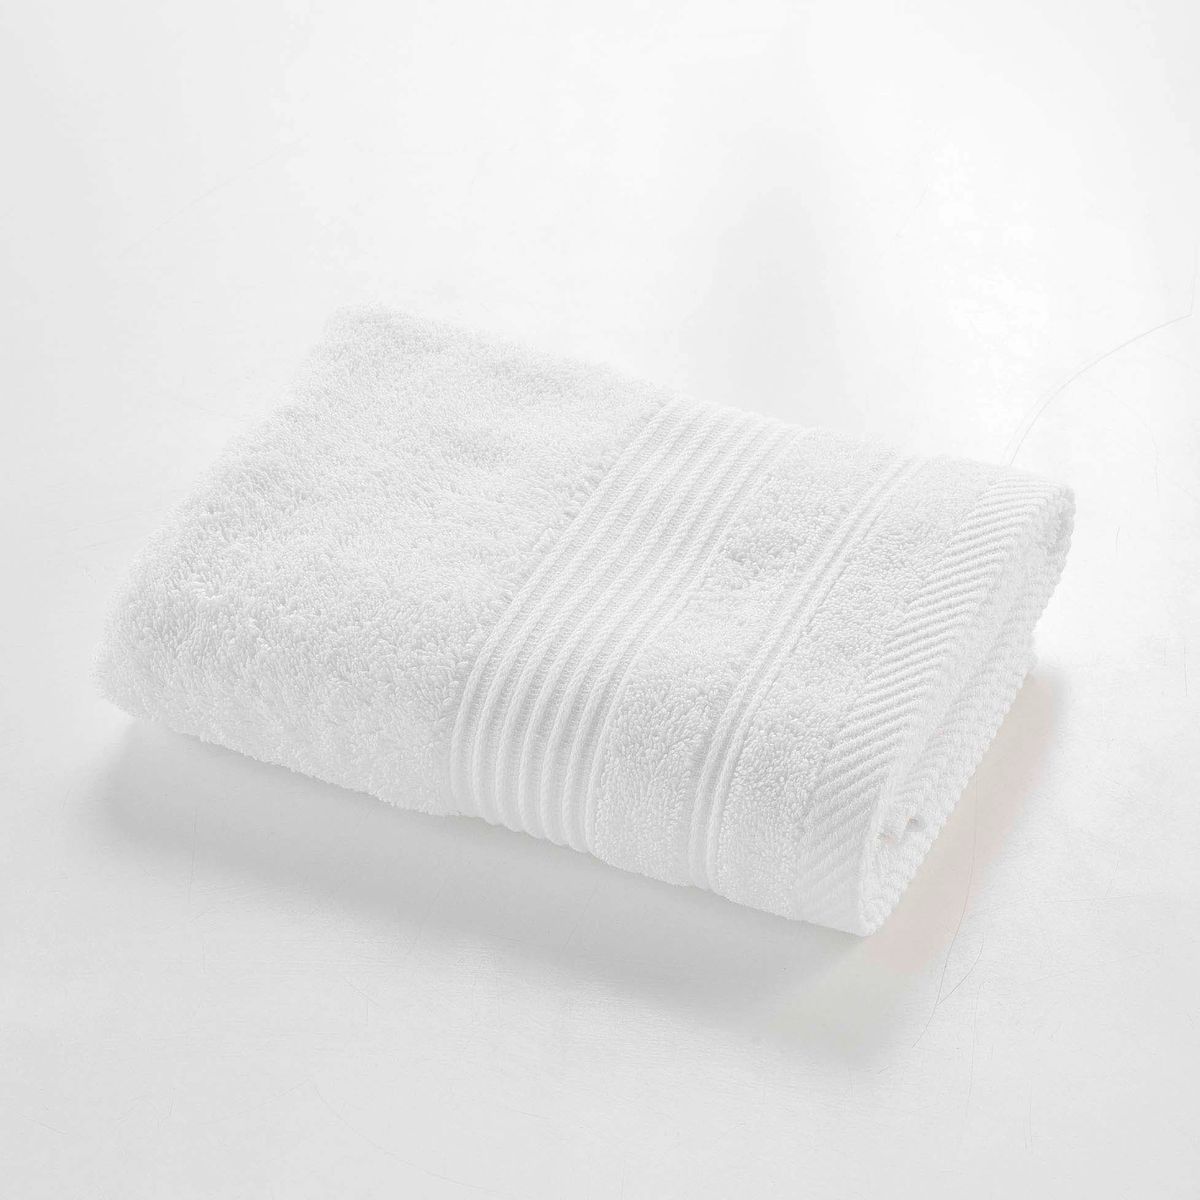 Serviette de bain coton peigné 685g/m2 Gris Pearl - LIOU